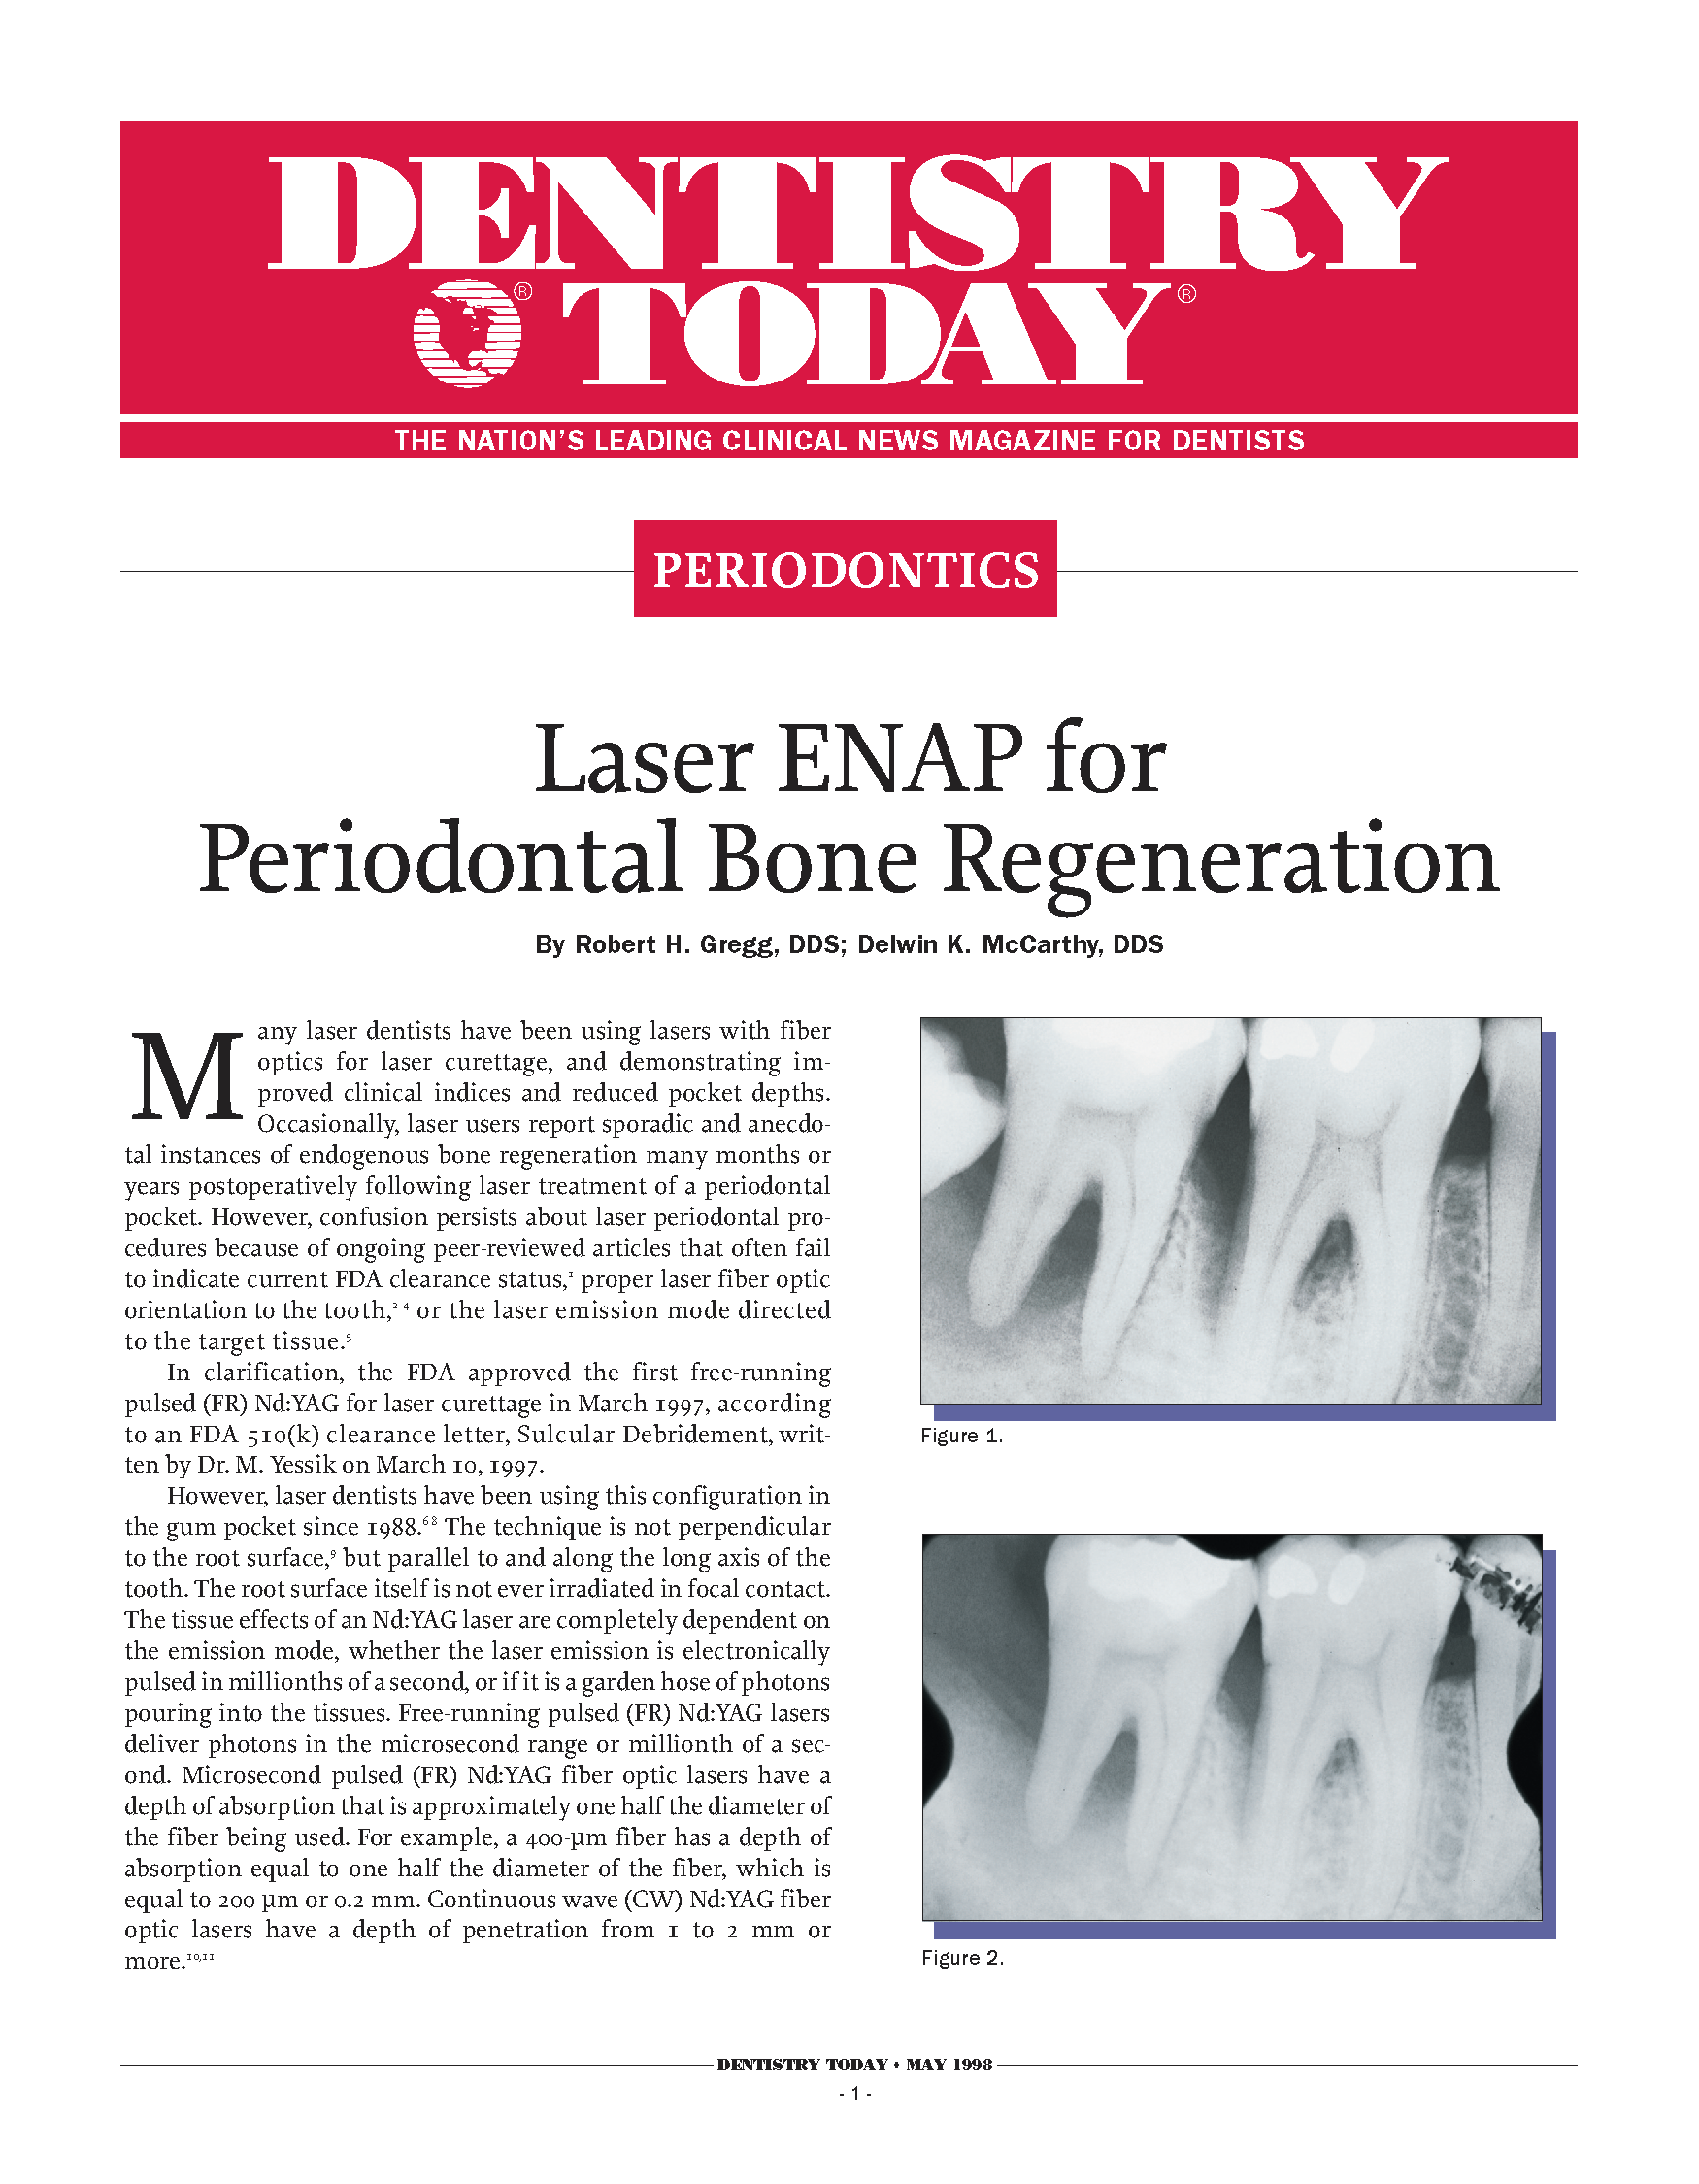 Laser ENAP for Periodontal Bone Regeneration